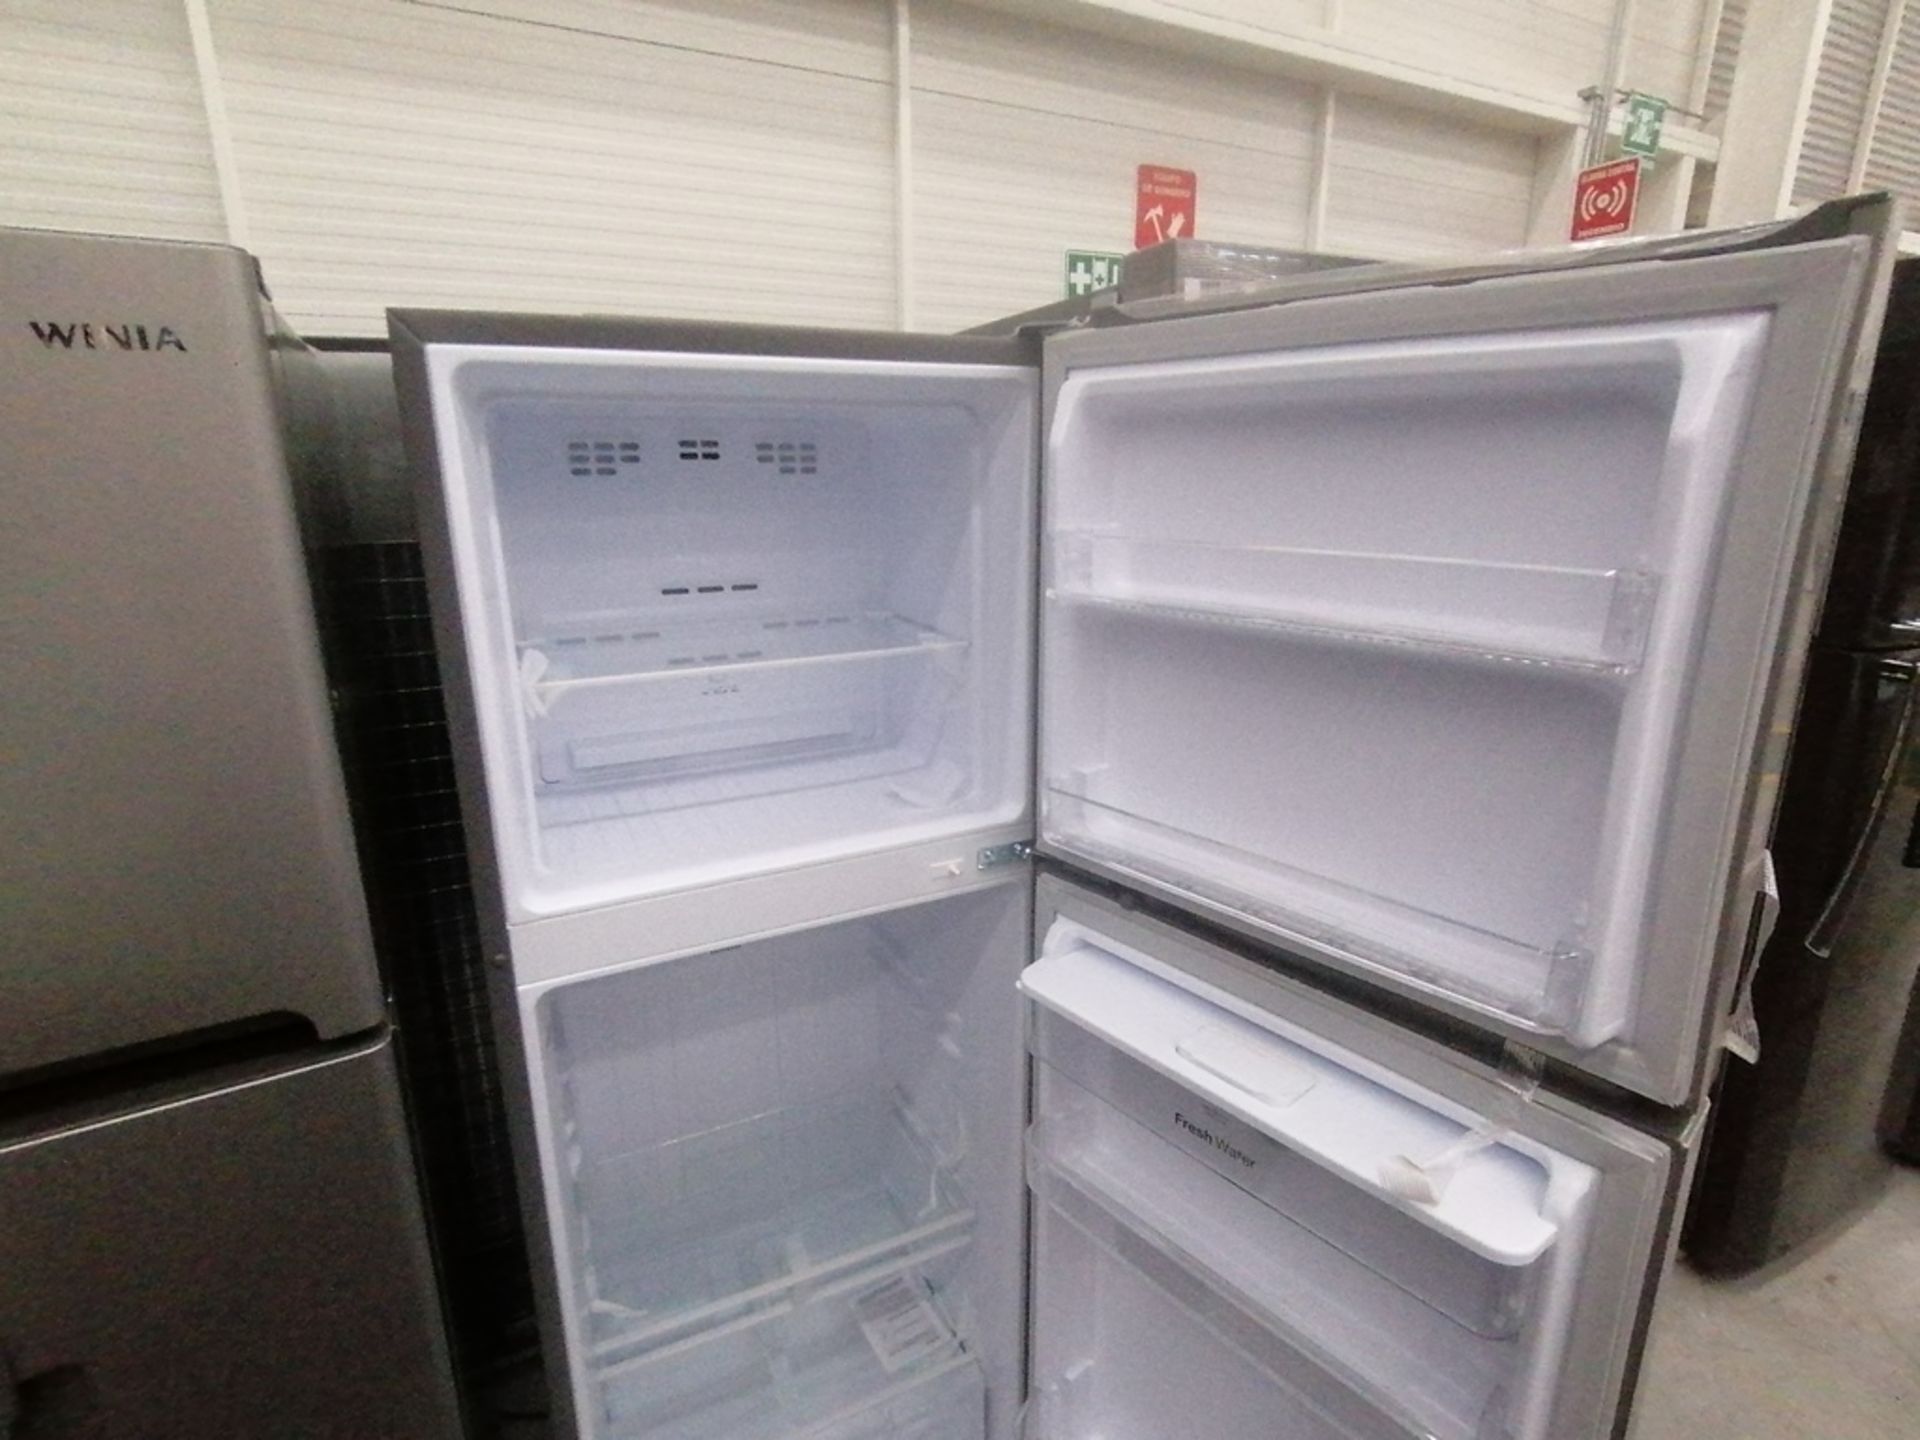 Lote de 2 refrigeradores incluye: 1 Refrigerador con dispensador de agua, Marca Winia, Modelo DFR32 - Image 7 of 15